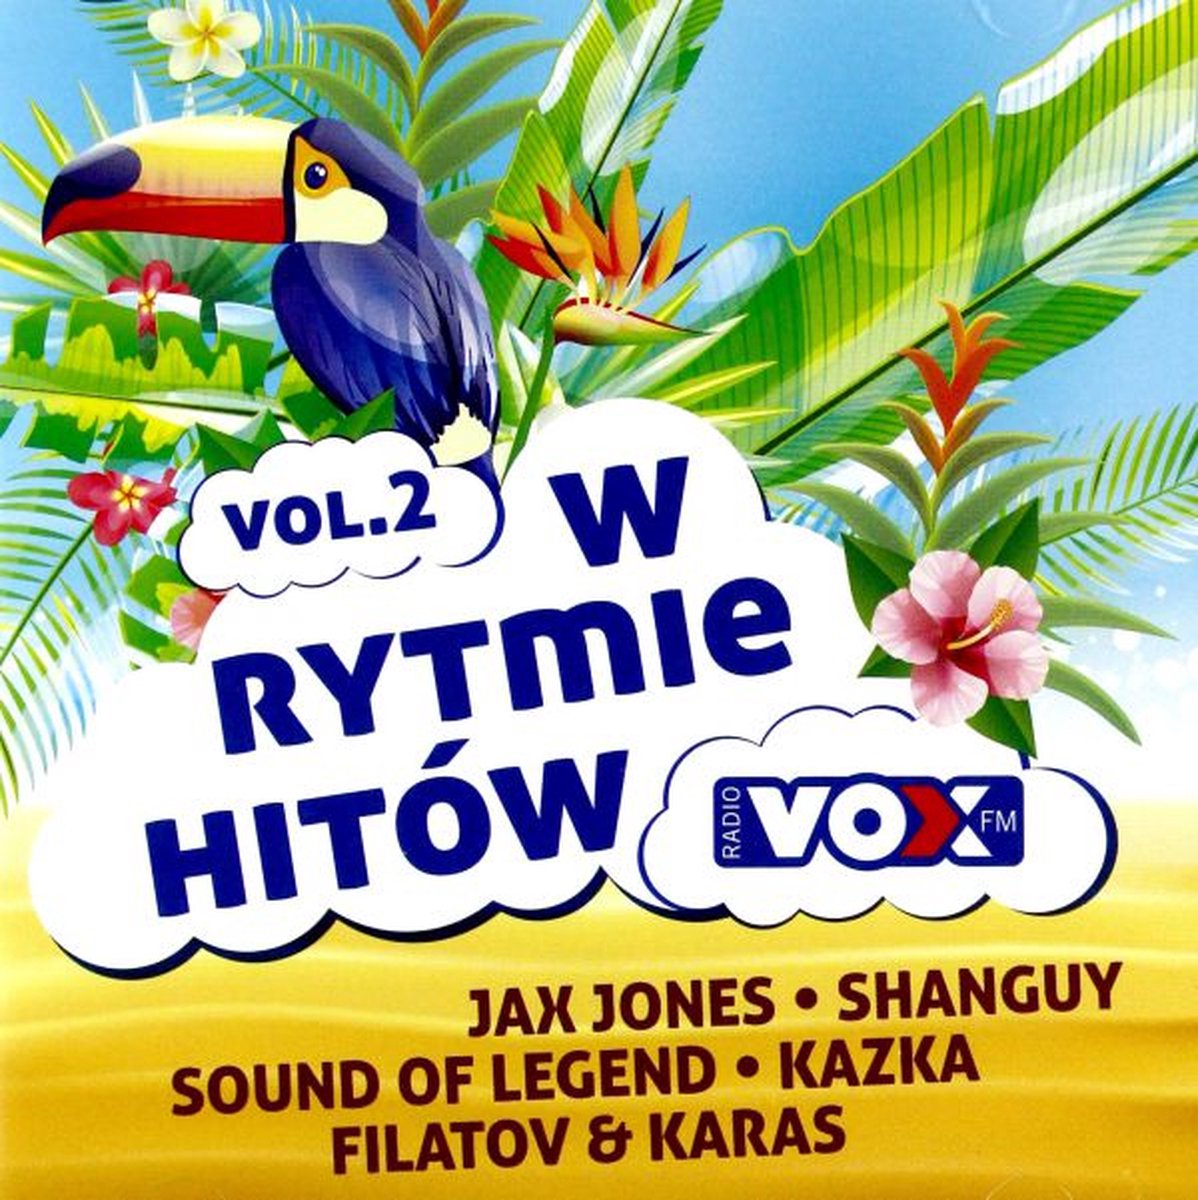 VOX FM W Rytmie Hitów vol. 2 [2CD] - Drenchill